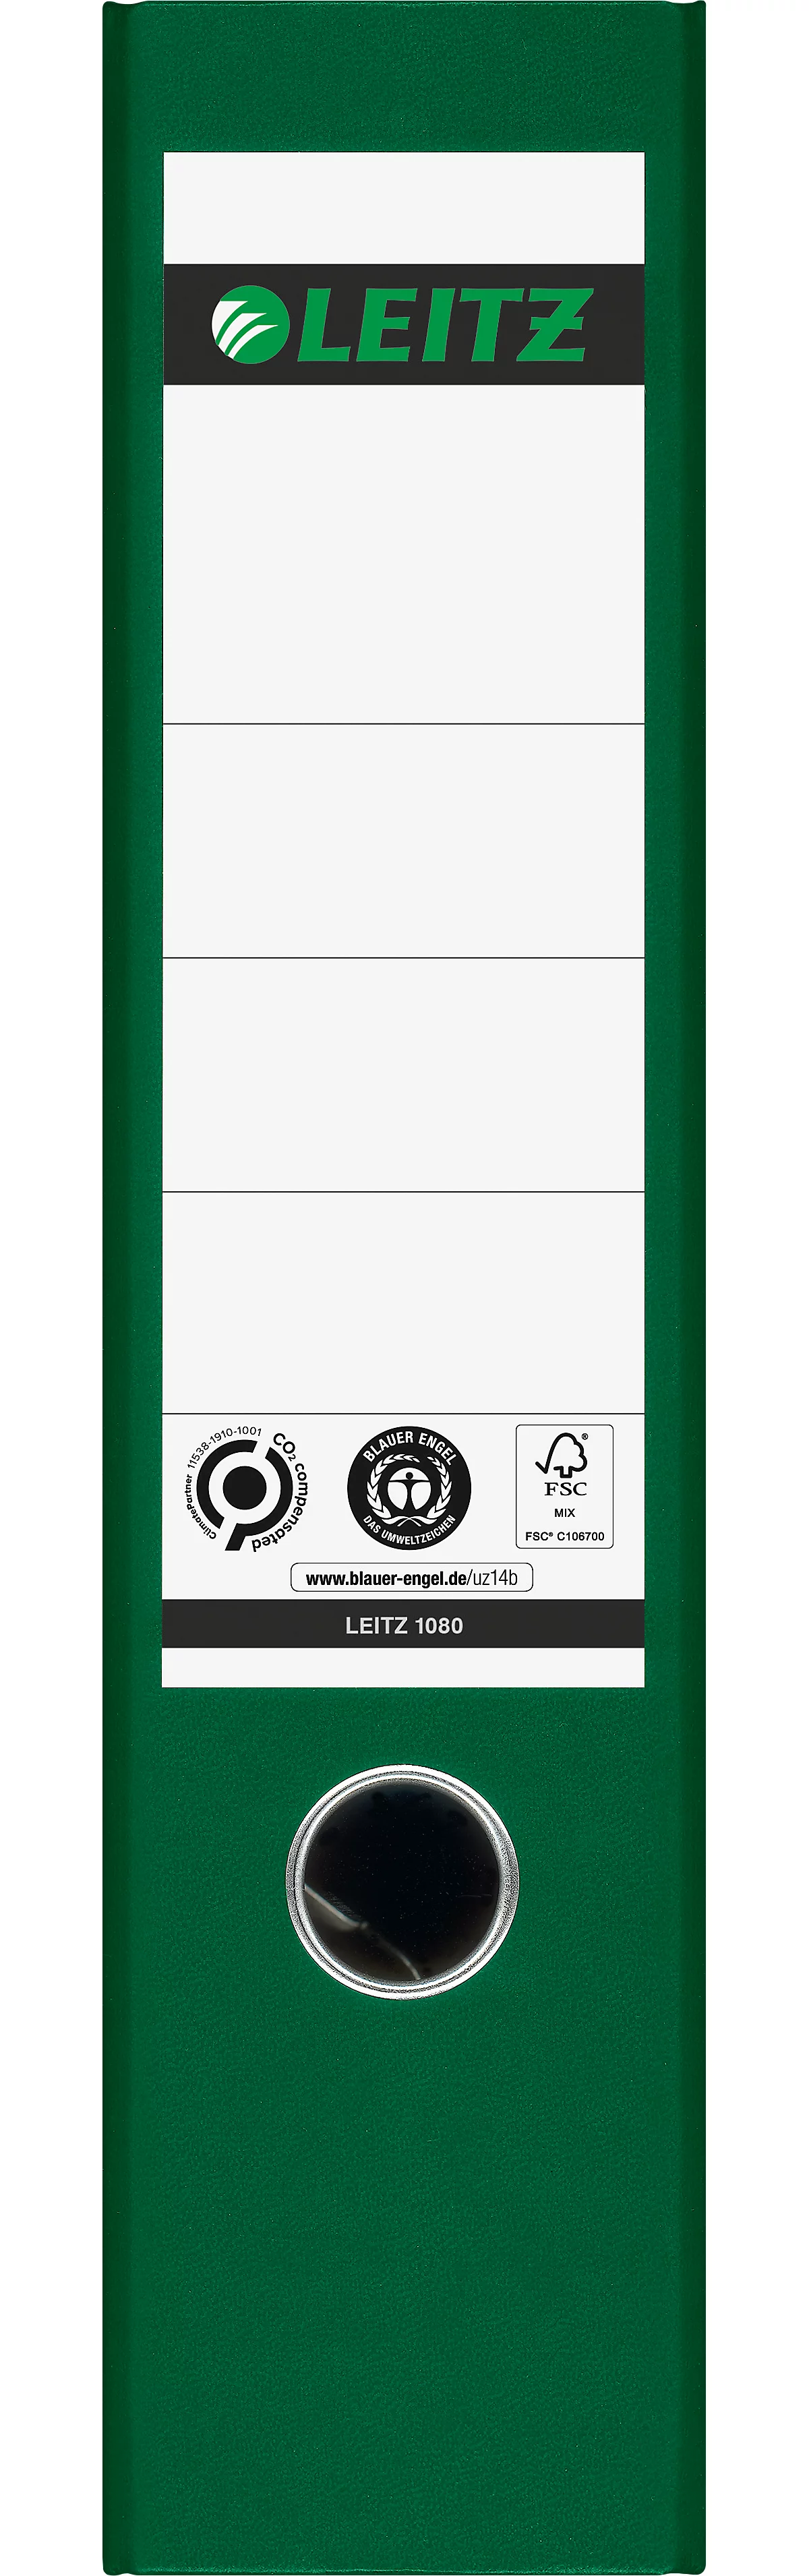 LEITZ® Carpeta 1080, DIN A4, ancho de lomo 80 mm, agujero para los dedos, etiqueta de lomo pegada, clima neutro, cartón duro, 20 unidades, verde